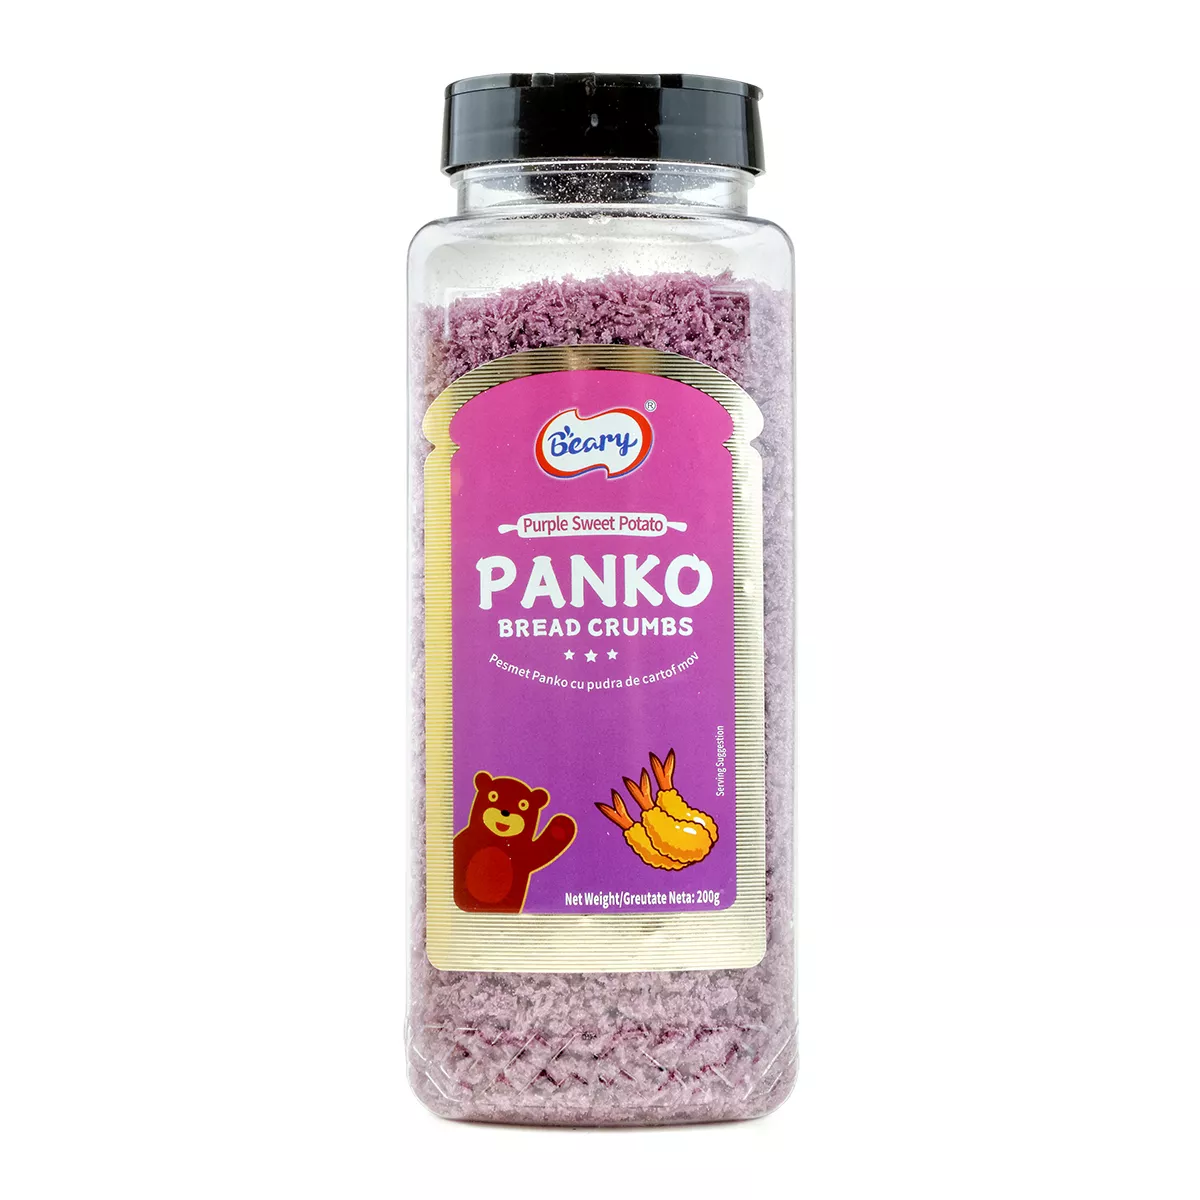 Pesmet Panko cu cartof dulce mov BEARY 200g, [],asianfood.ro